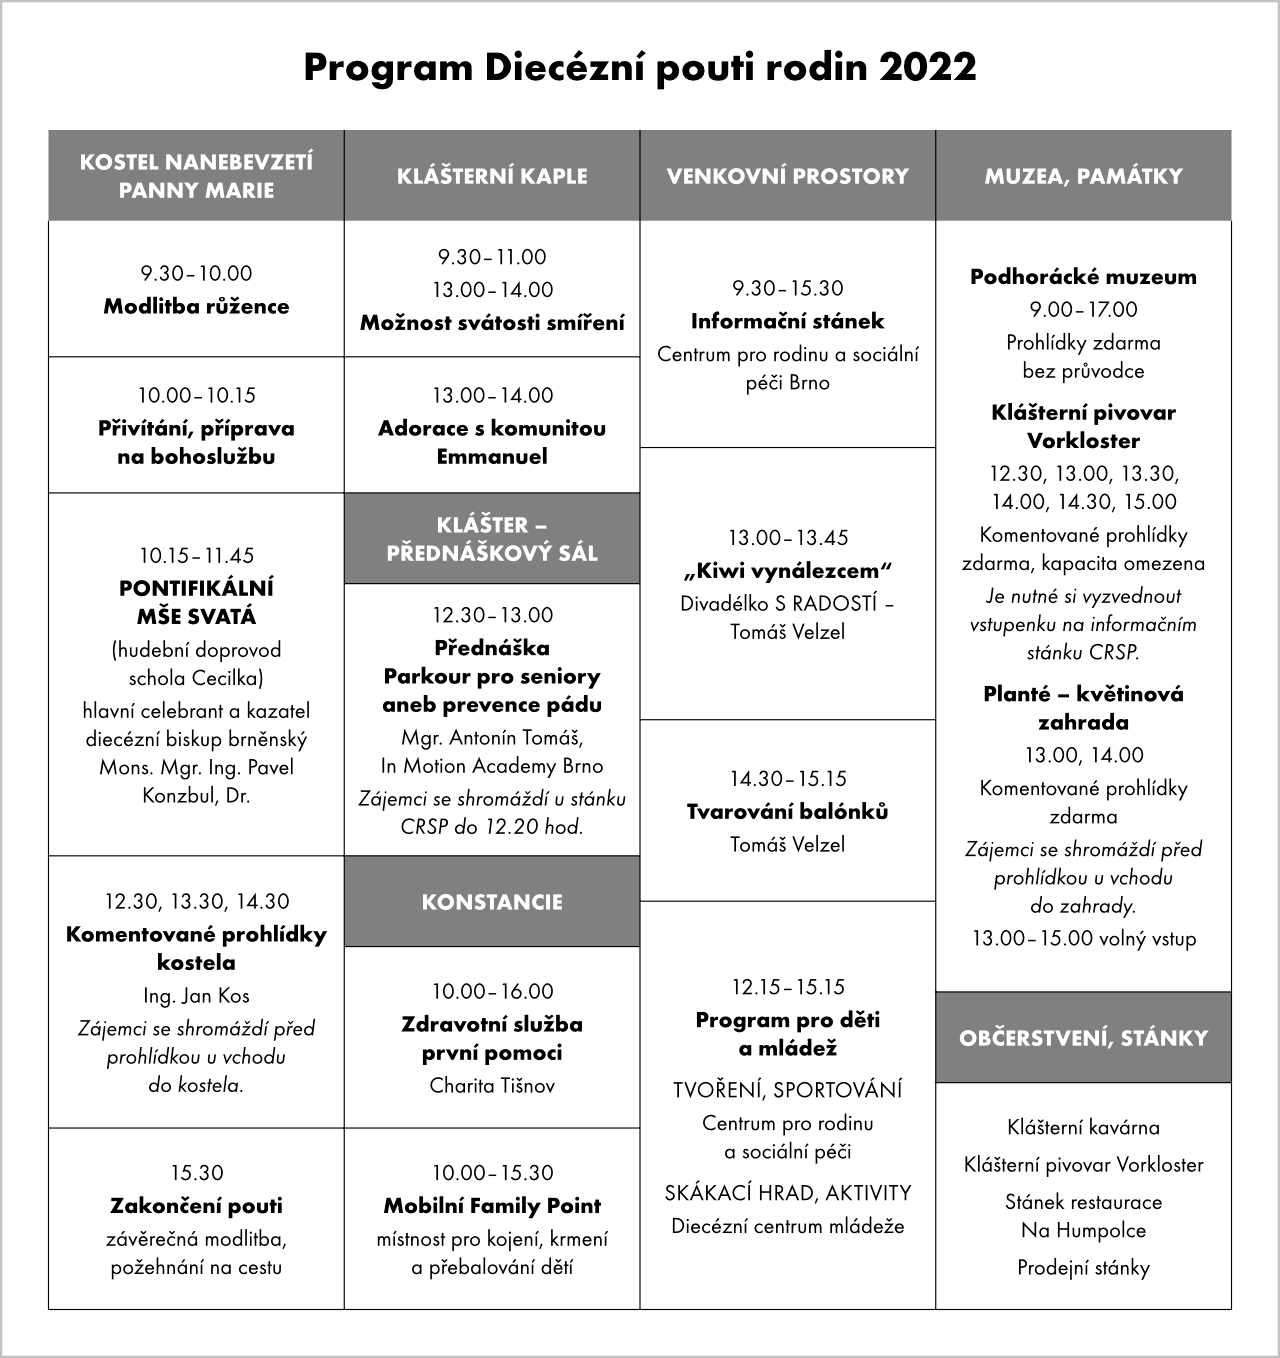 diecezni-pout-rodin-2022-program